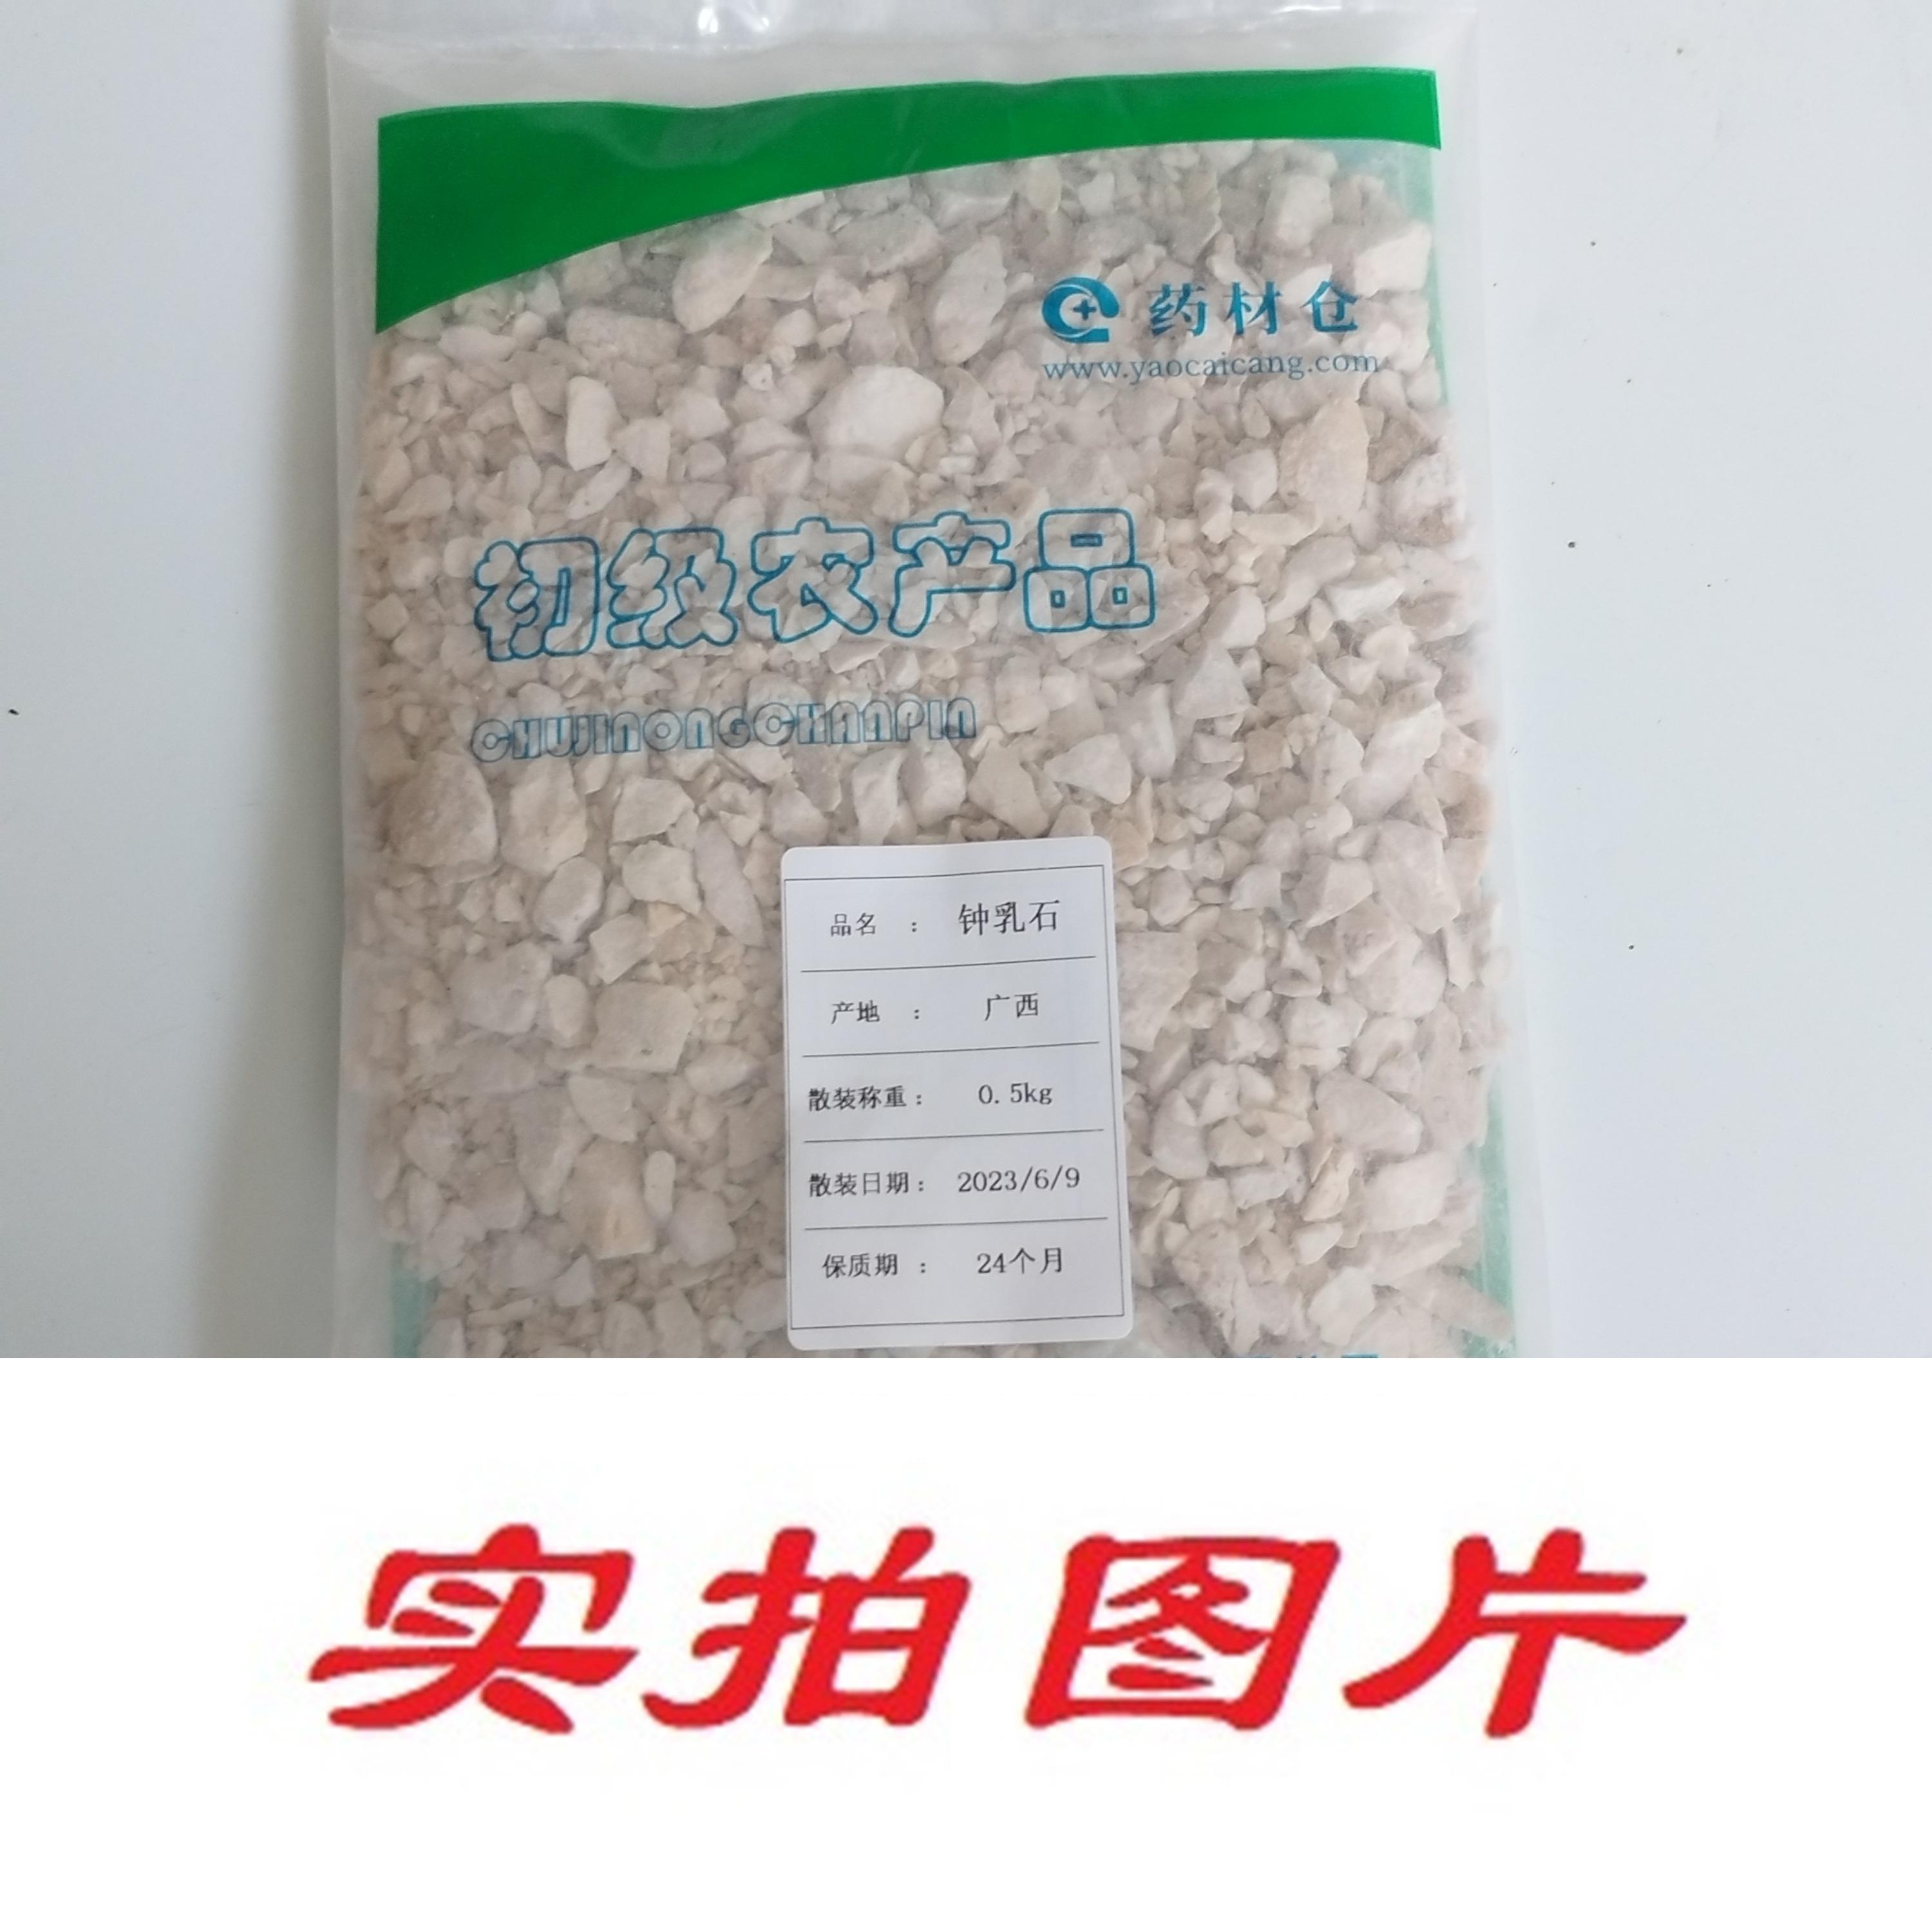 【】钟乳石0.5kg-农副产品